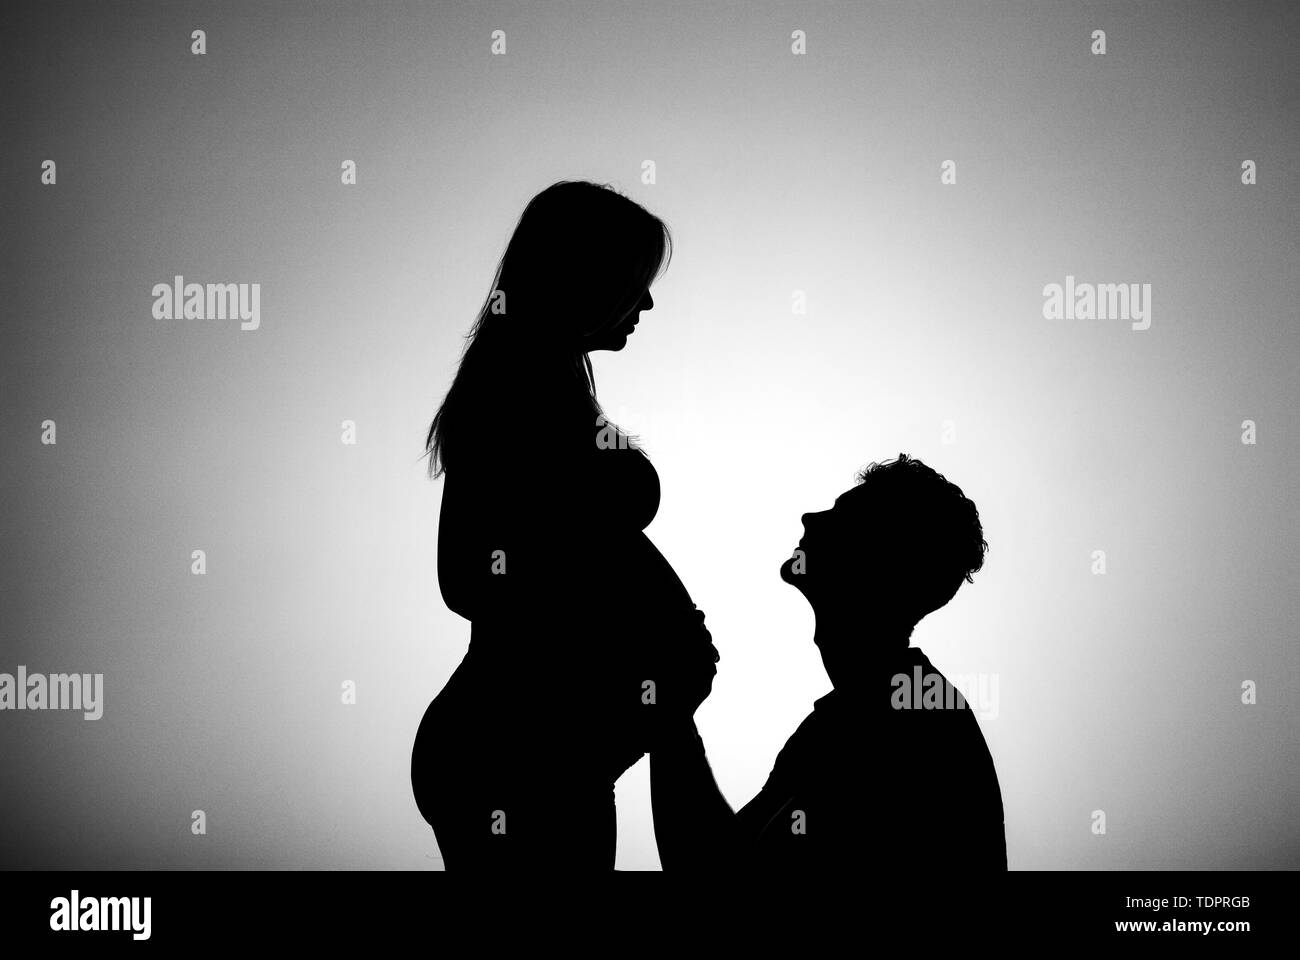 Una silhouette in uno studio di un giovane che stanno avendo un bambino e il padre è toccante della madre e del ventre che è ben lungo nel suo stato di gravidanza Foto Stock